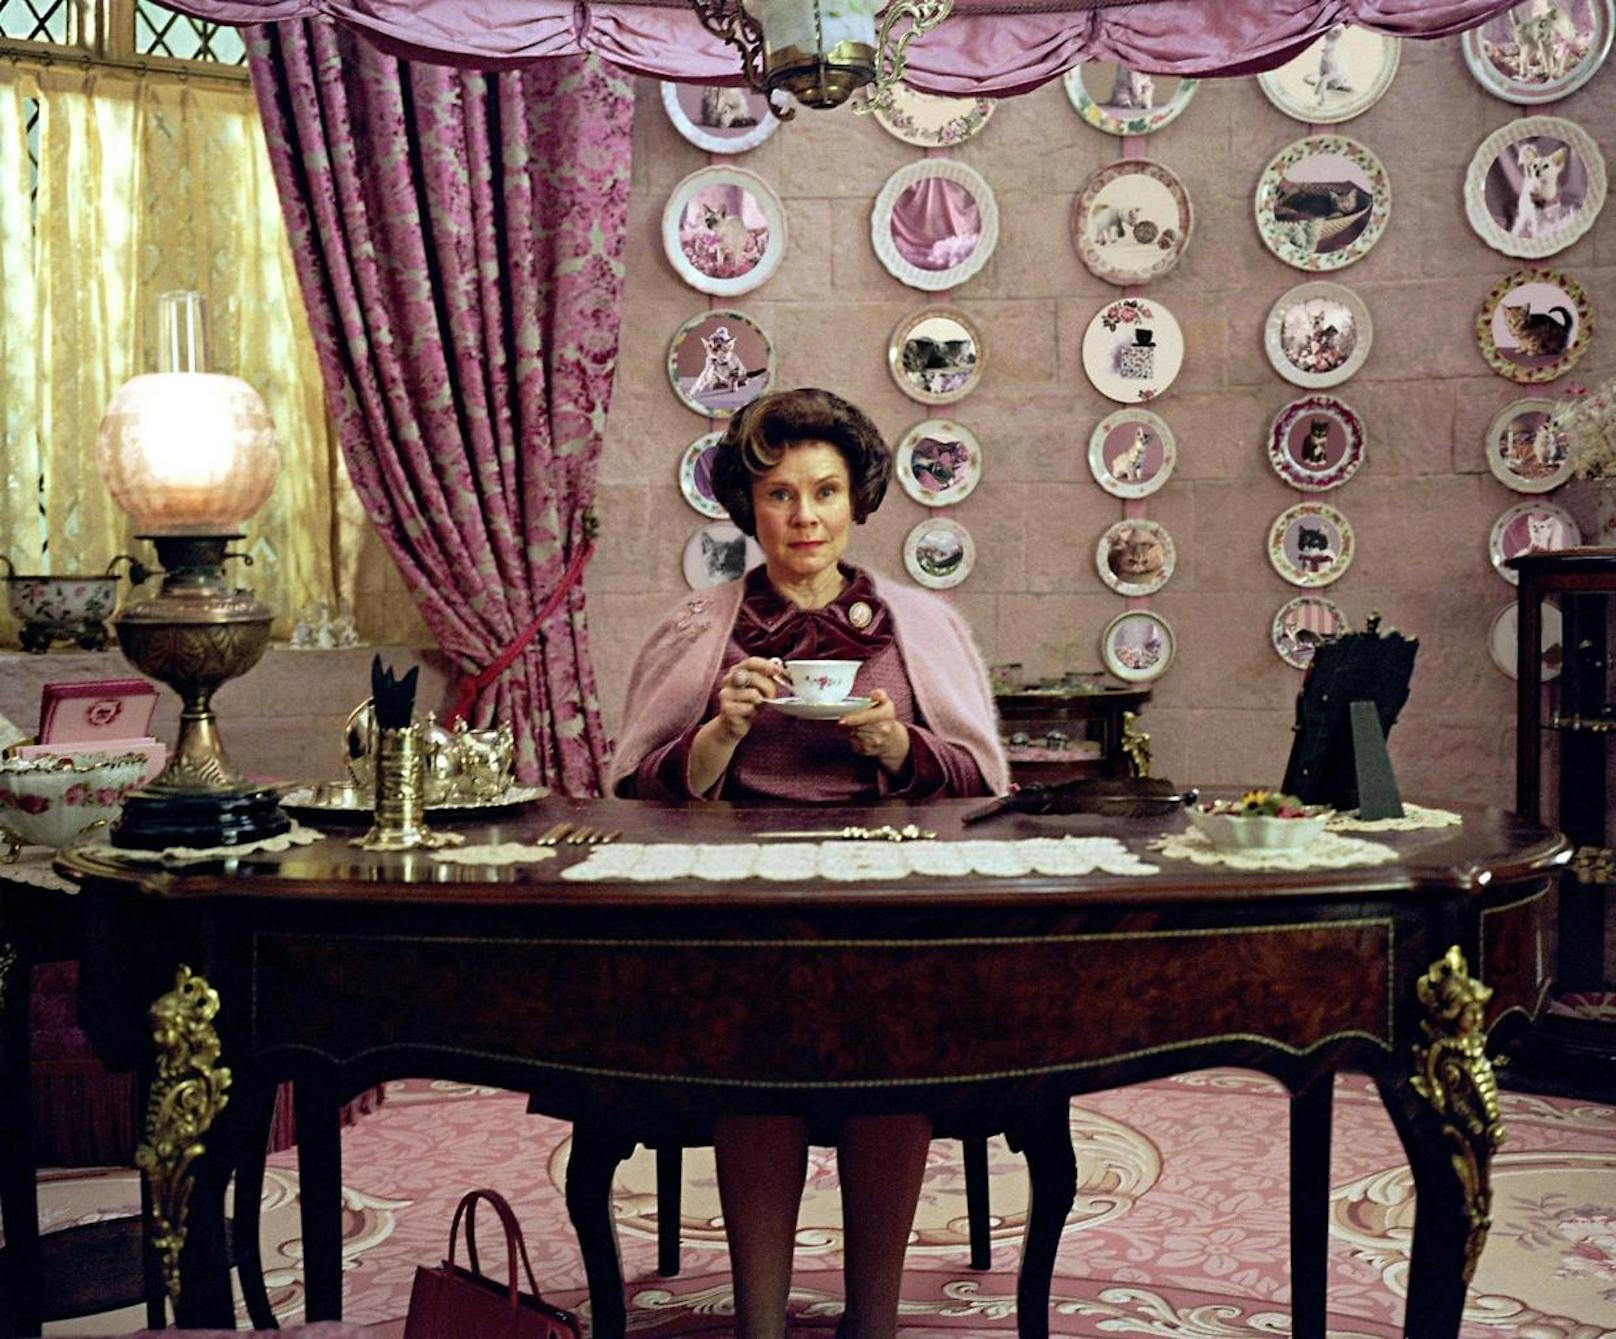 Imelda Staunton als Dolores Umbridge in "Harry Potter und der Orden des Phönix".